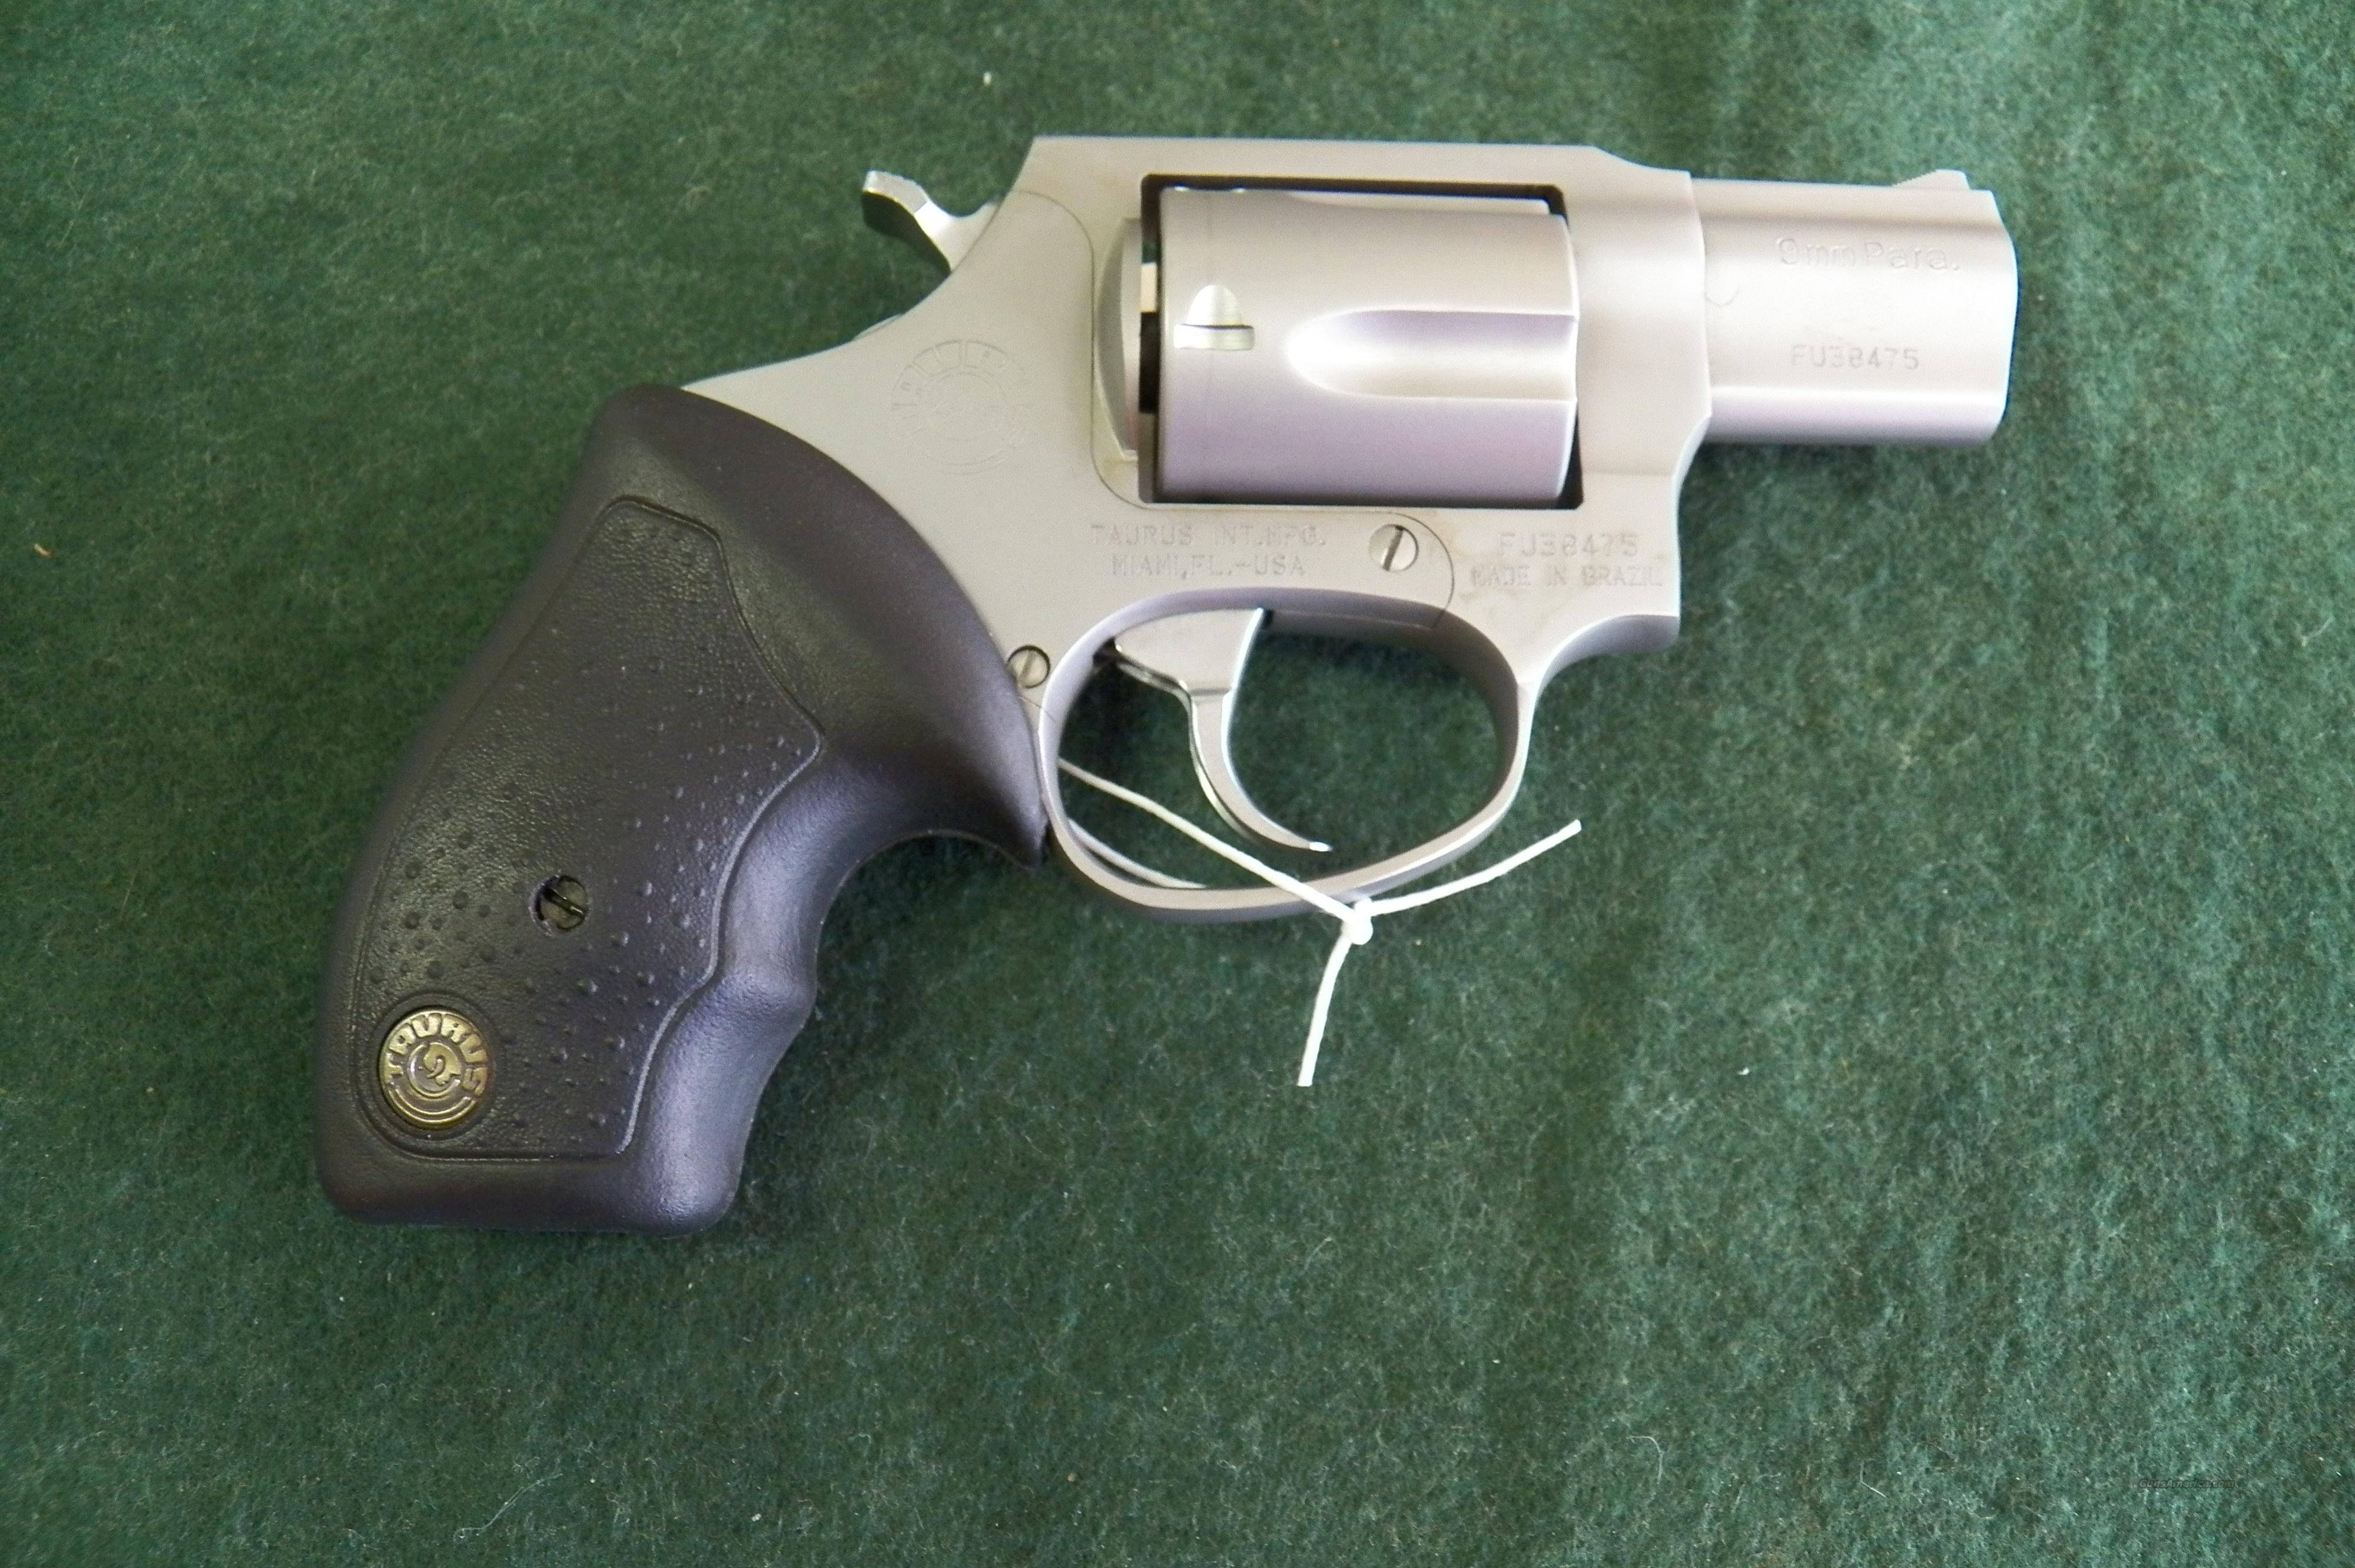 9mm revolver